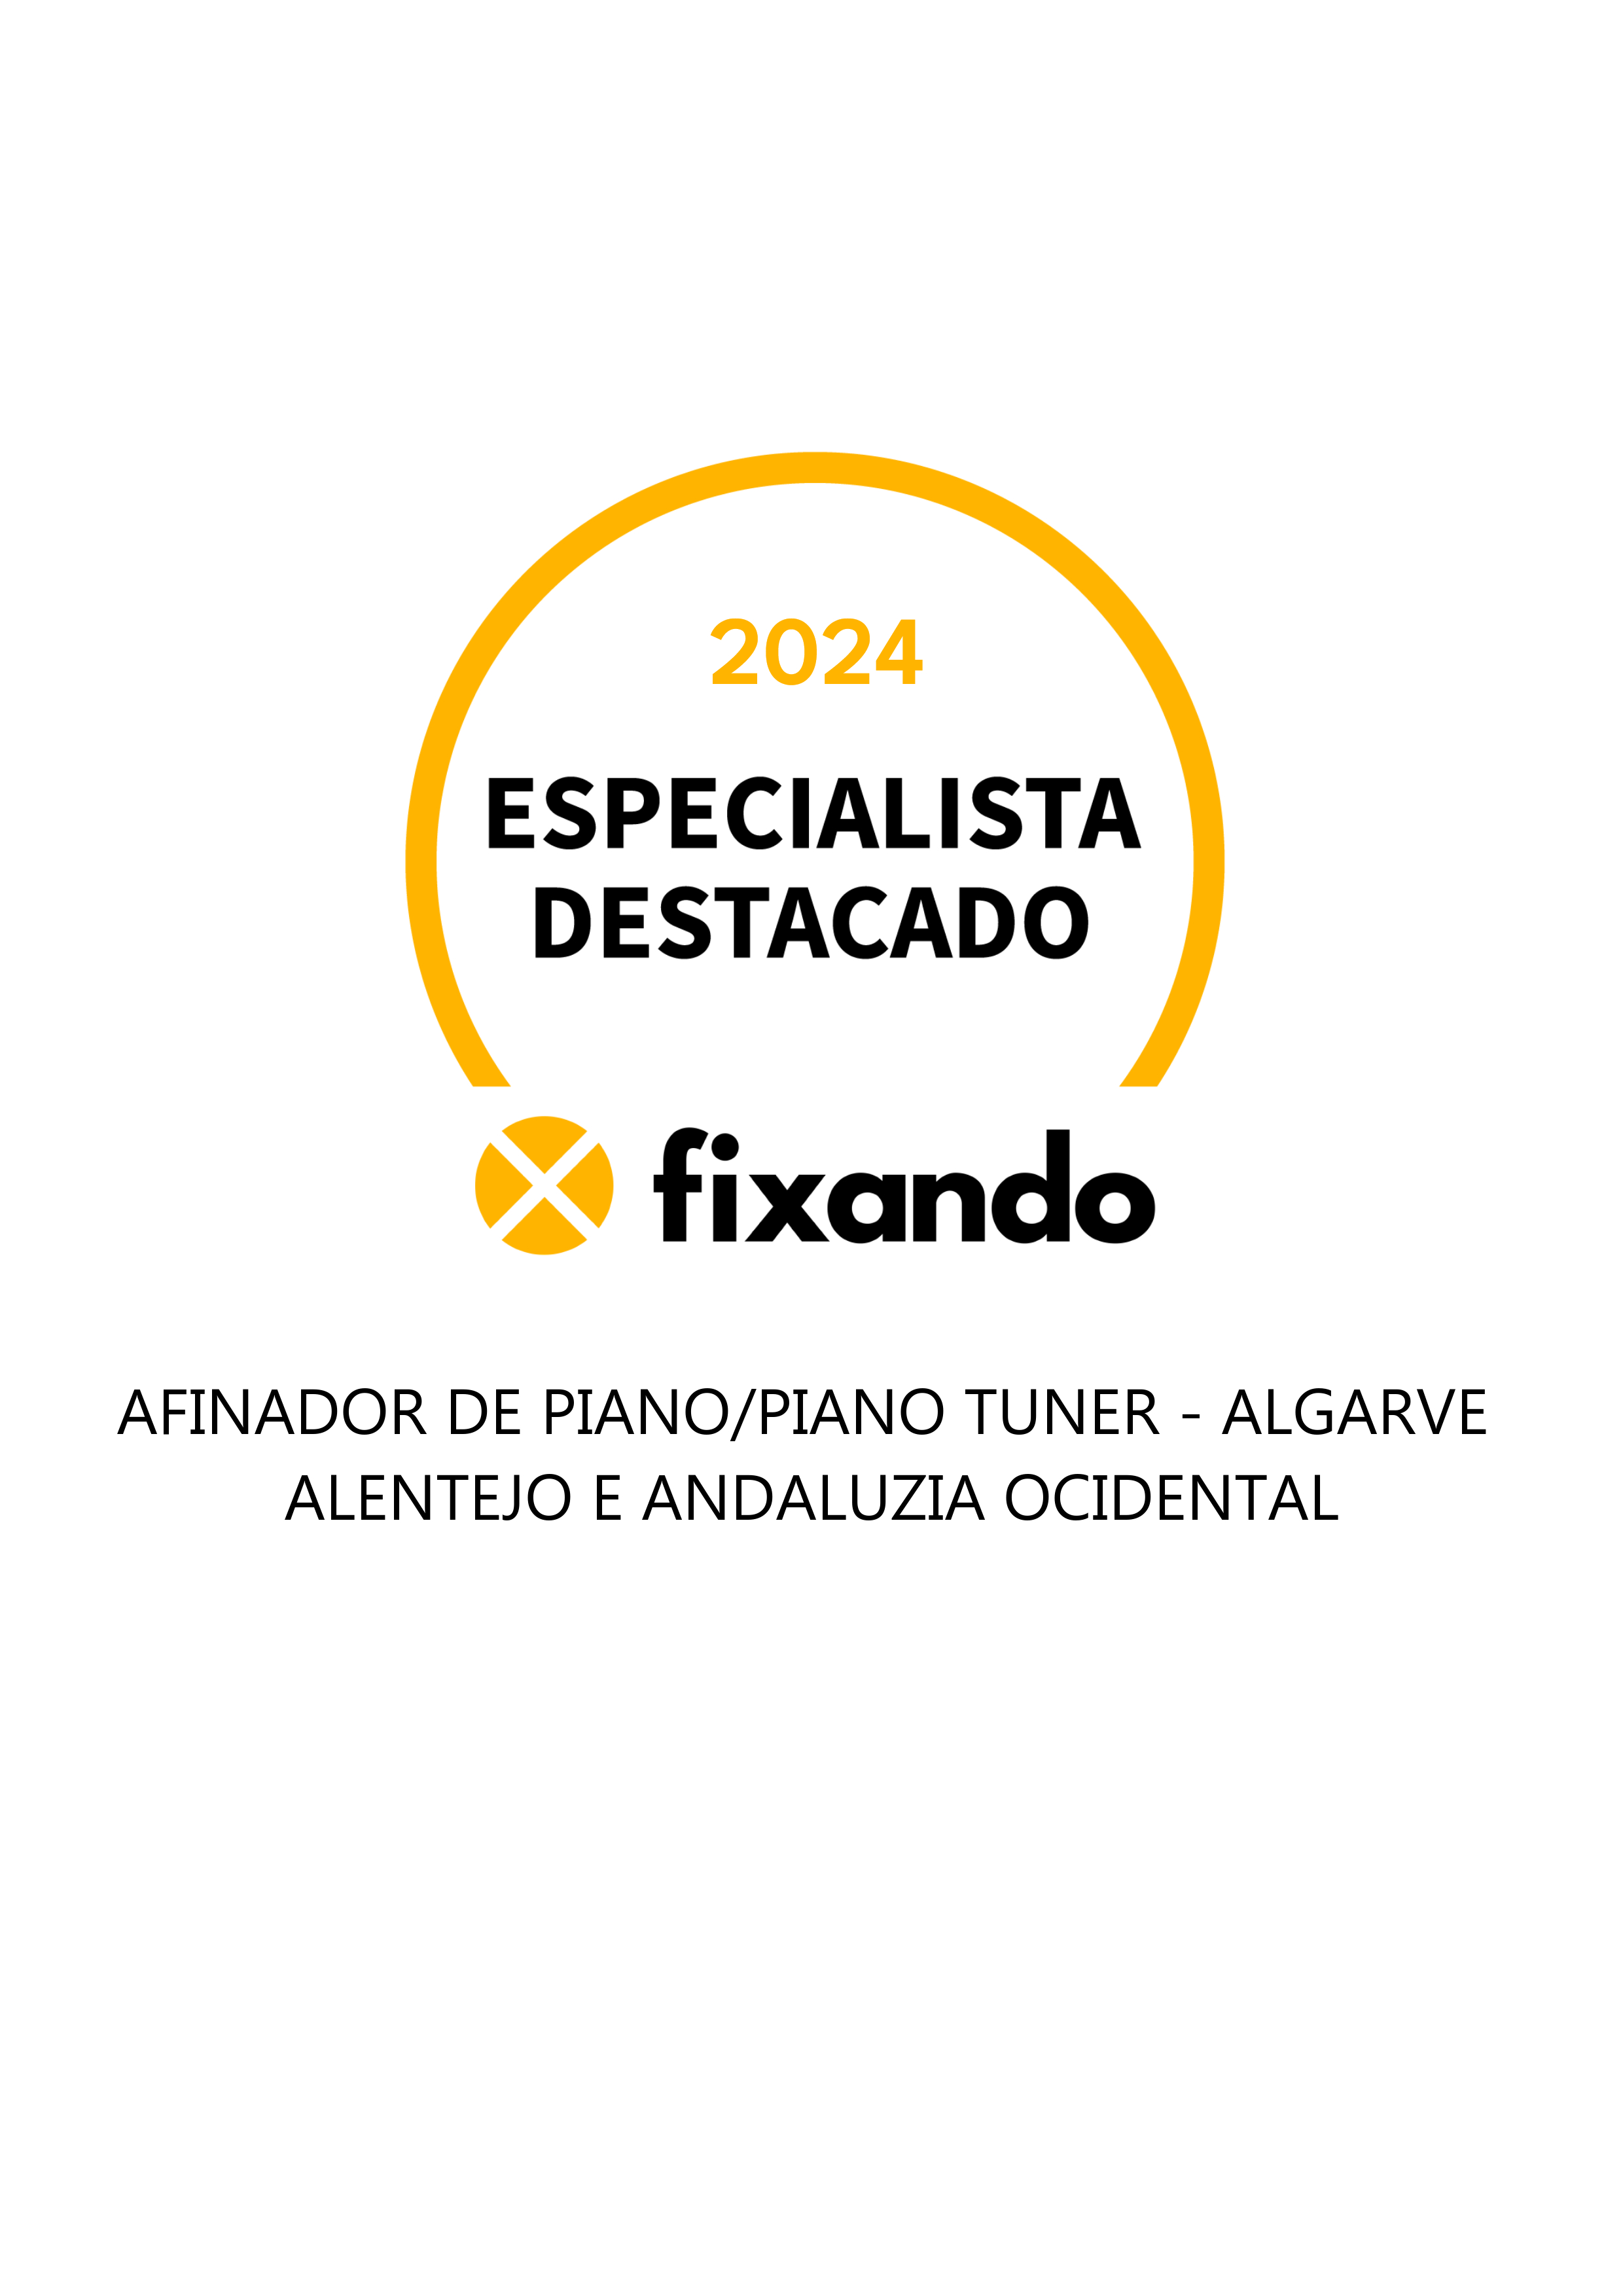 Afinador de Piano/Piano tuner - Algarve  Alentejo e Andaluzia ocidental - El Atazar - Reparación y soporte técnico - Otros equipos